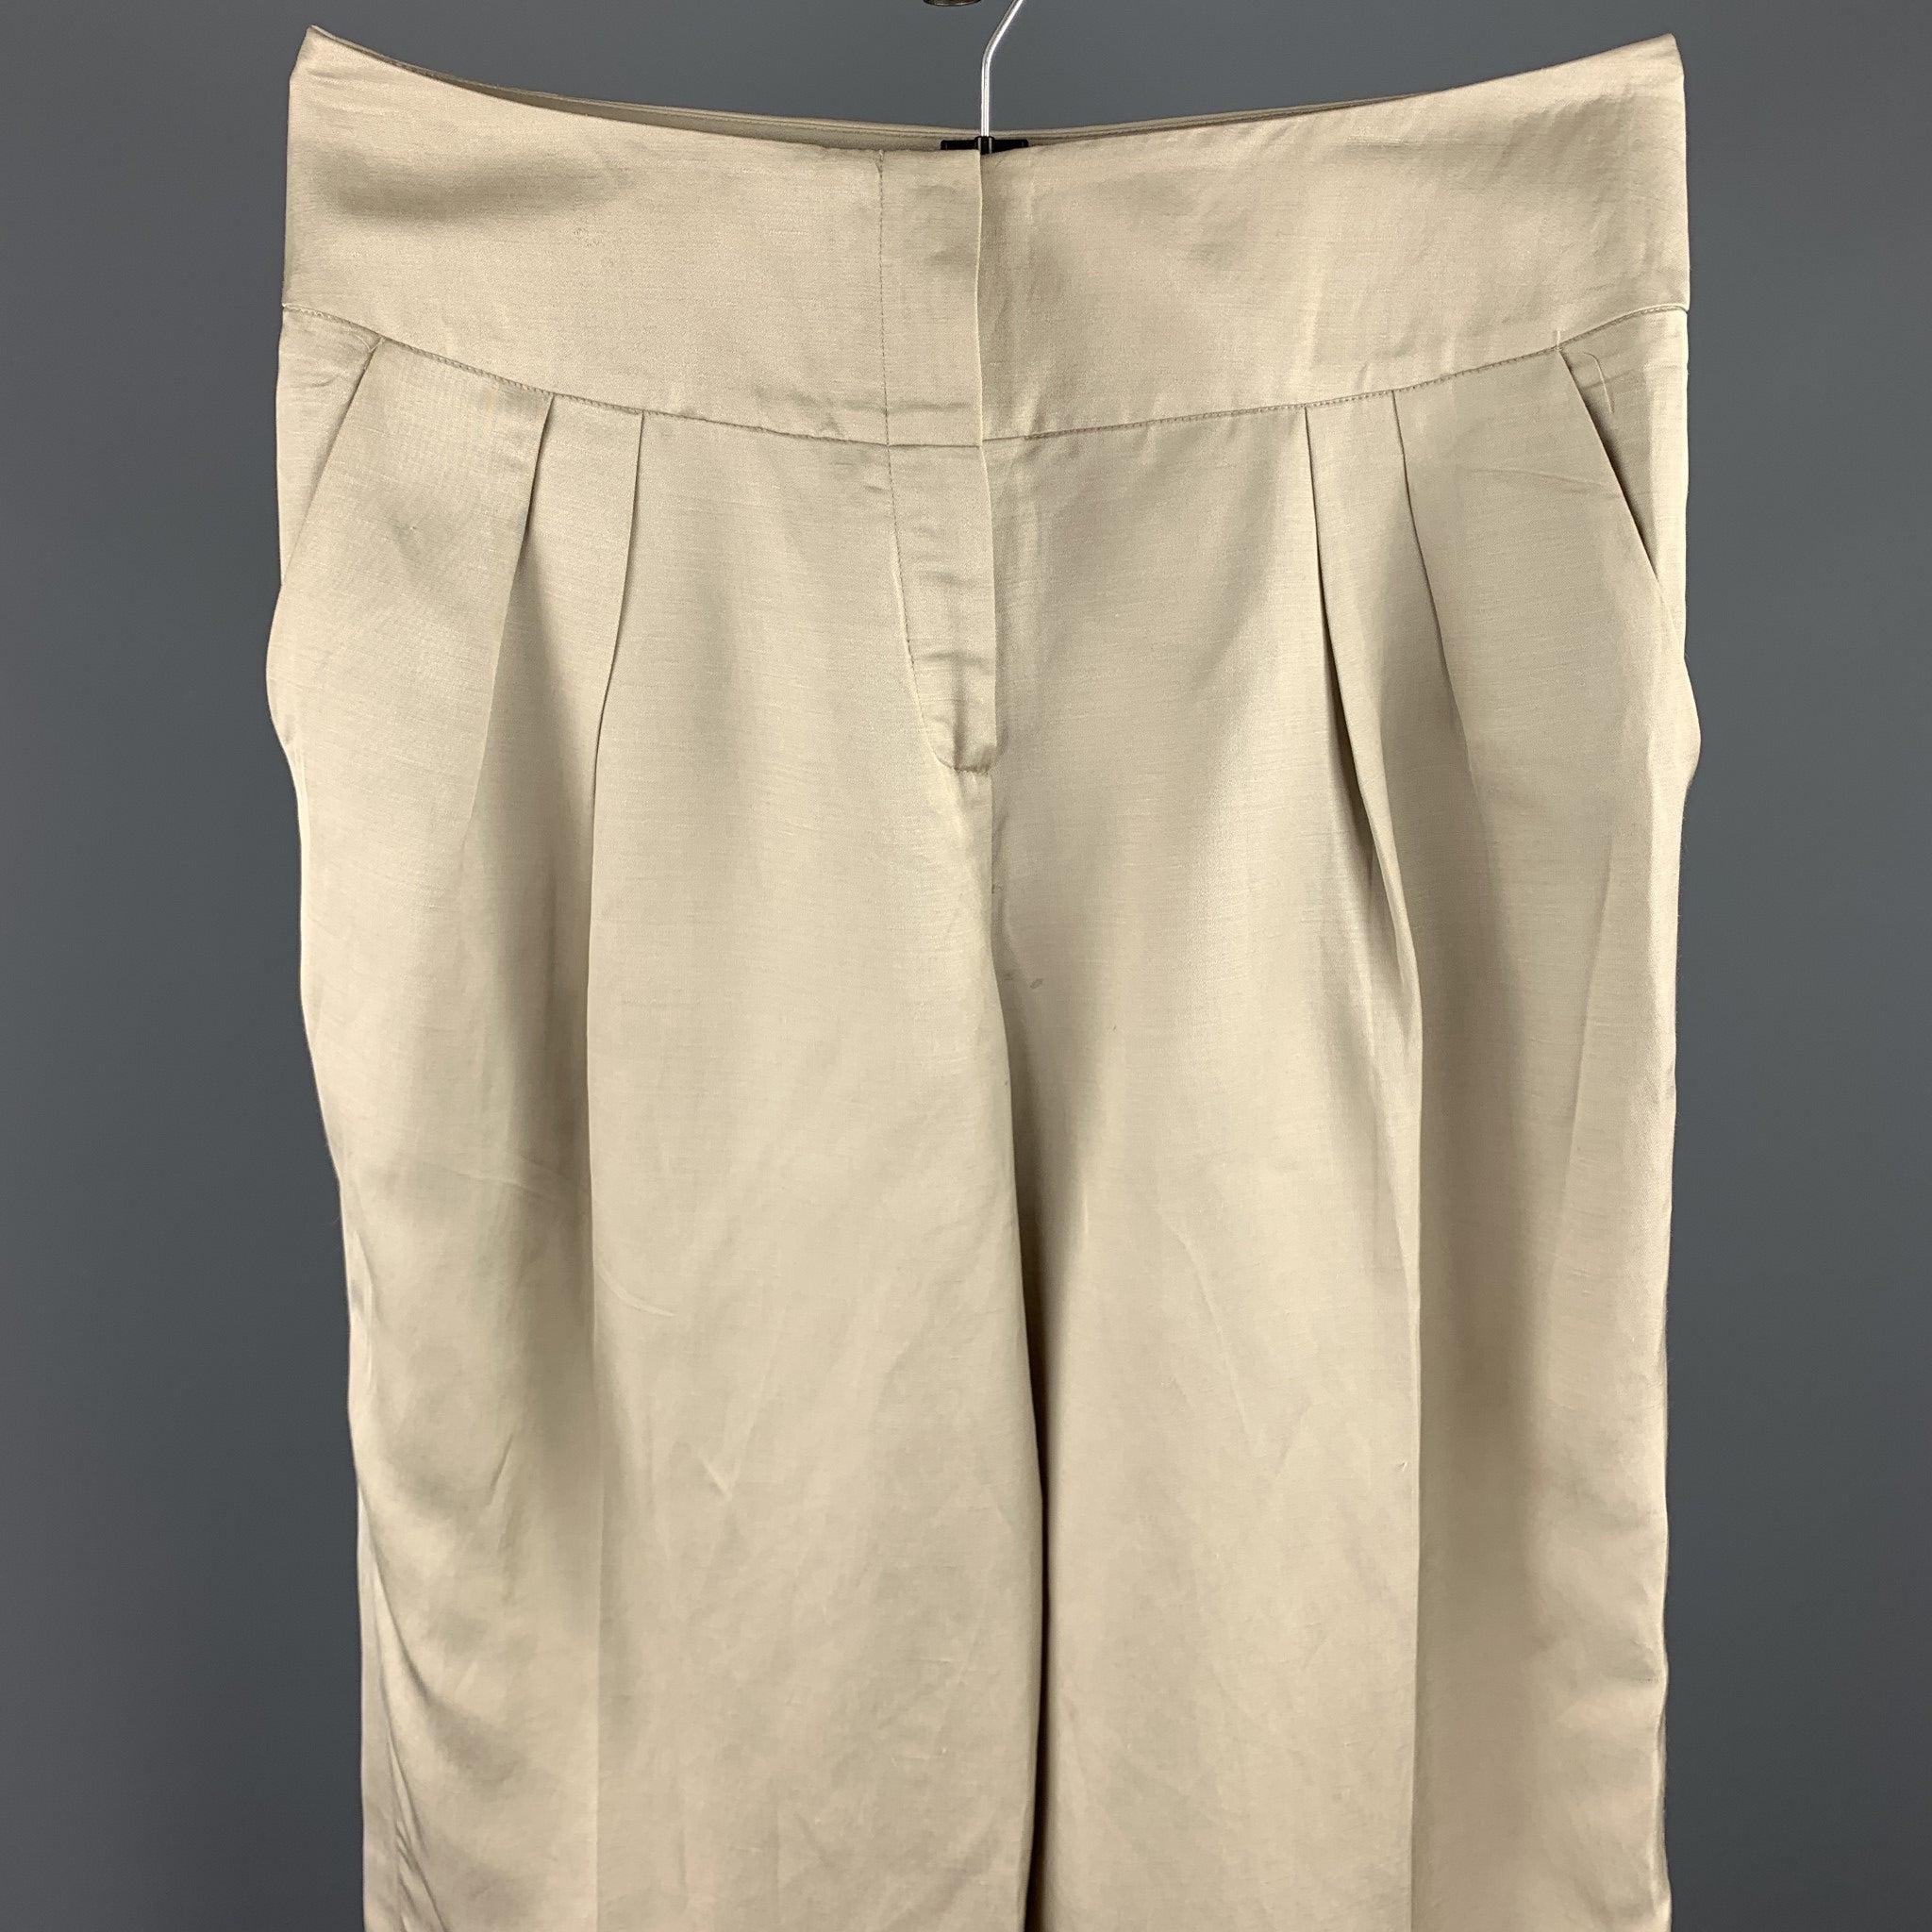 Le pantalon habillé OSCAR DE LA RENTA se compose d'un mélange de lin beige, d'une jambe large raccourcie, de plis, de poches fendues et d'une fermeture à glissière. Fabriqué en Italie.
Etat d'occasion. 

Marqué :   8 

Mesures : 
  Taille : 30